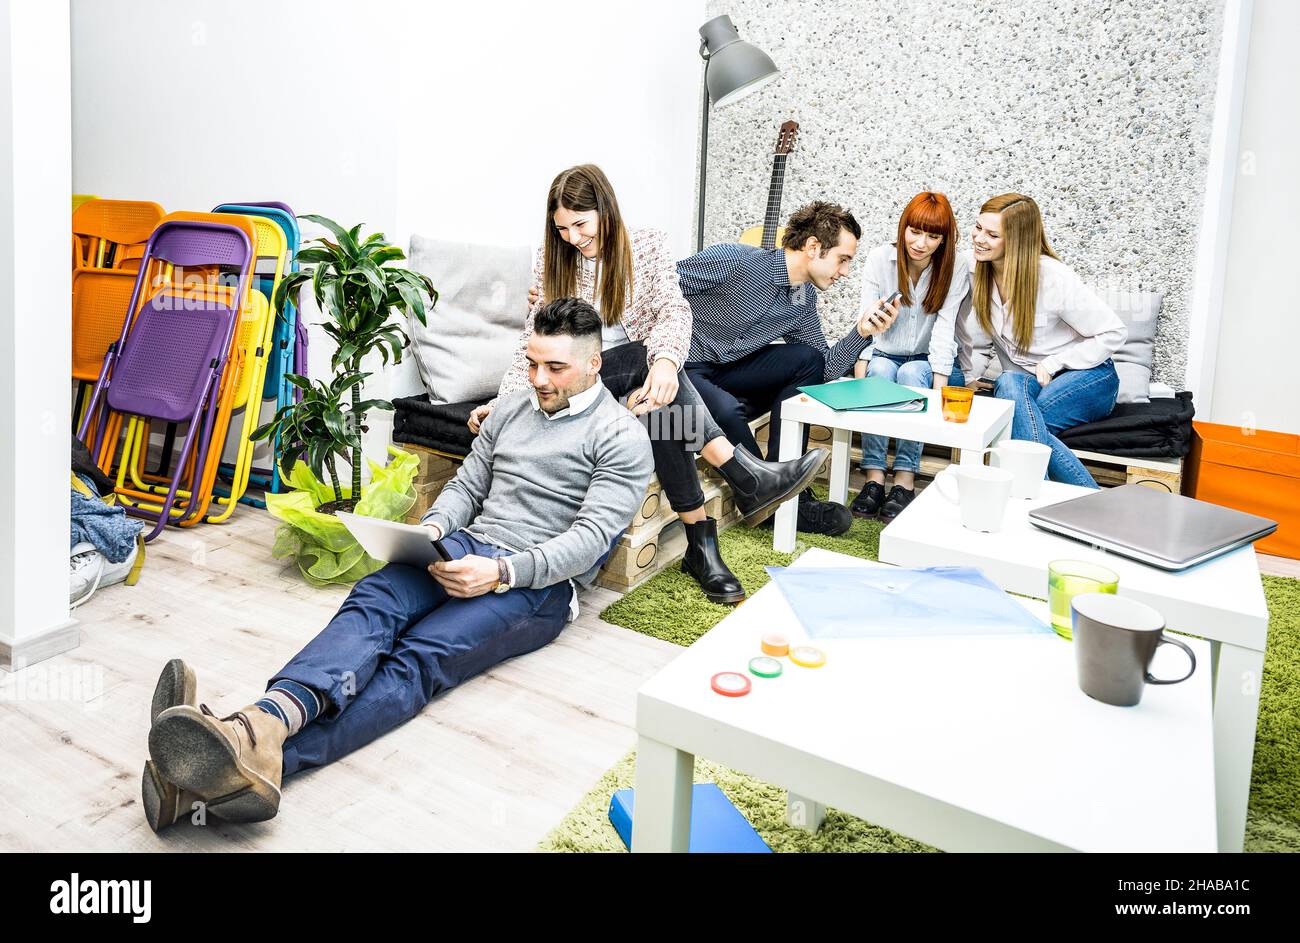 Junge Menschen Arbeitnehmer mit Pause in Start-up-Büro - Human Resources Business-Konzept mit kreativen Unternehmern Spaß zusammen Stockfoto